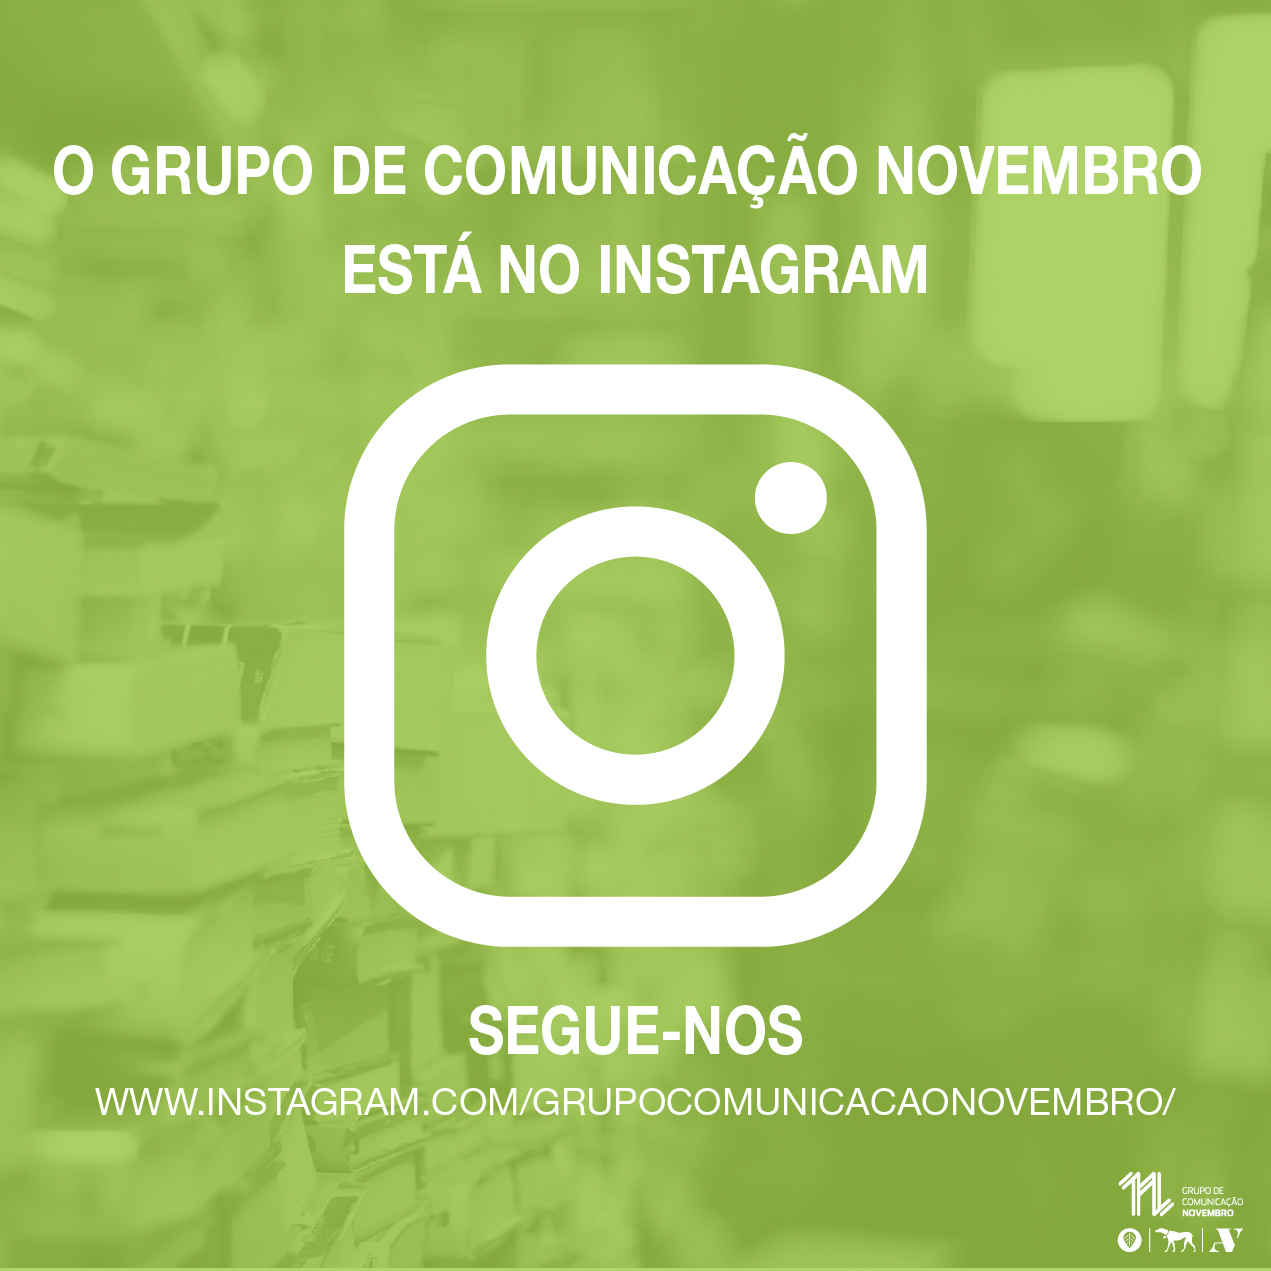 O Grupo de Comunicação Novembro está no Instagram